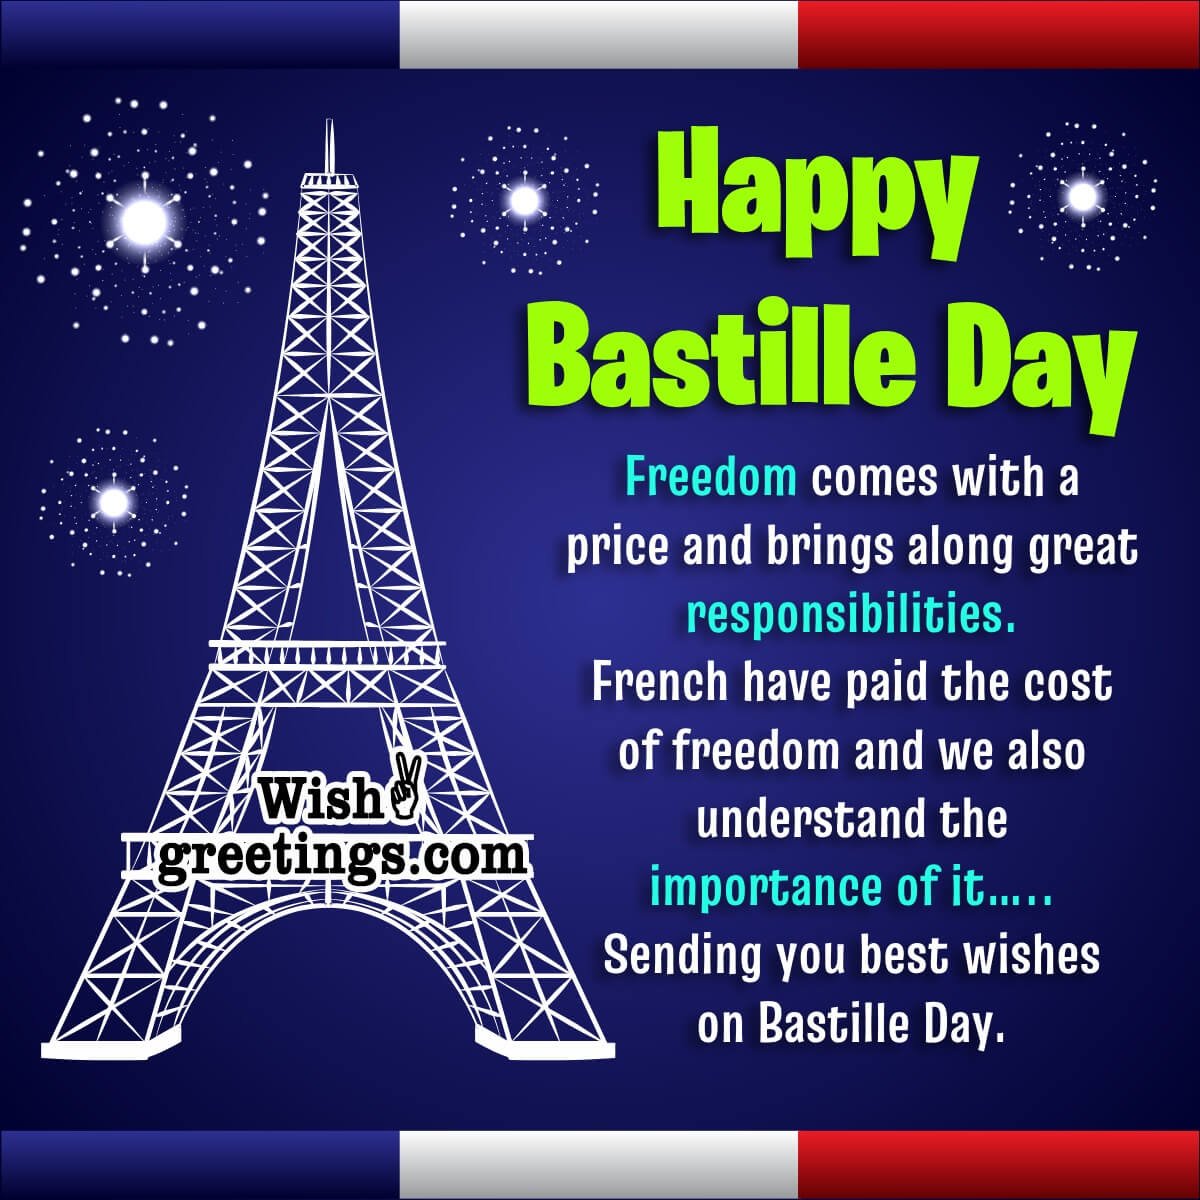 Happy Bastille Day Message